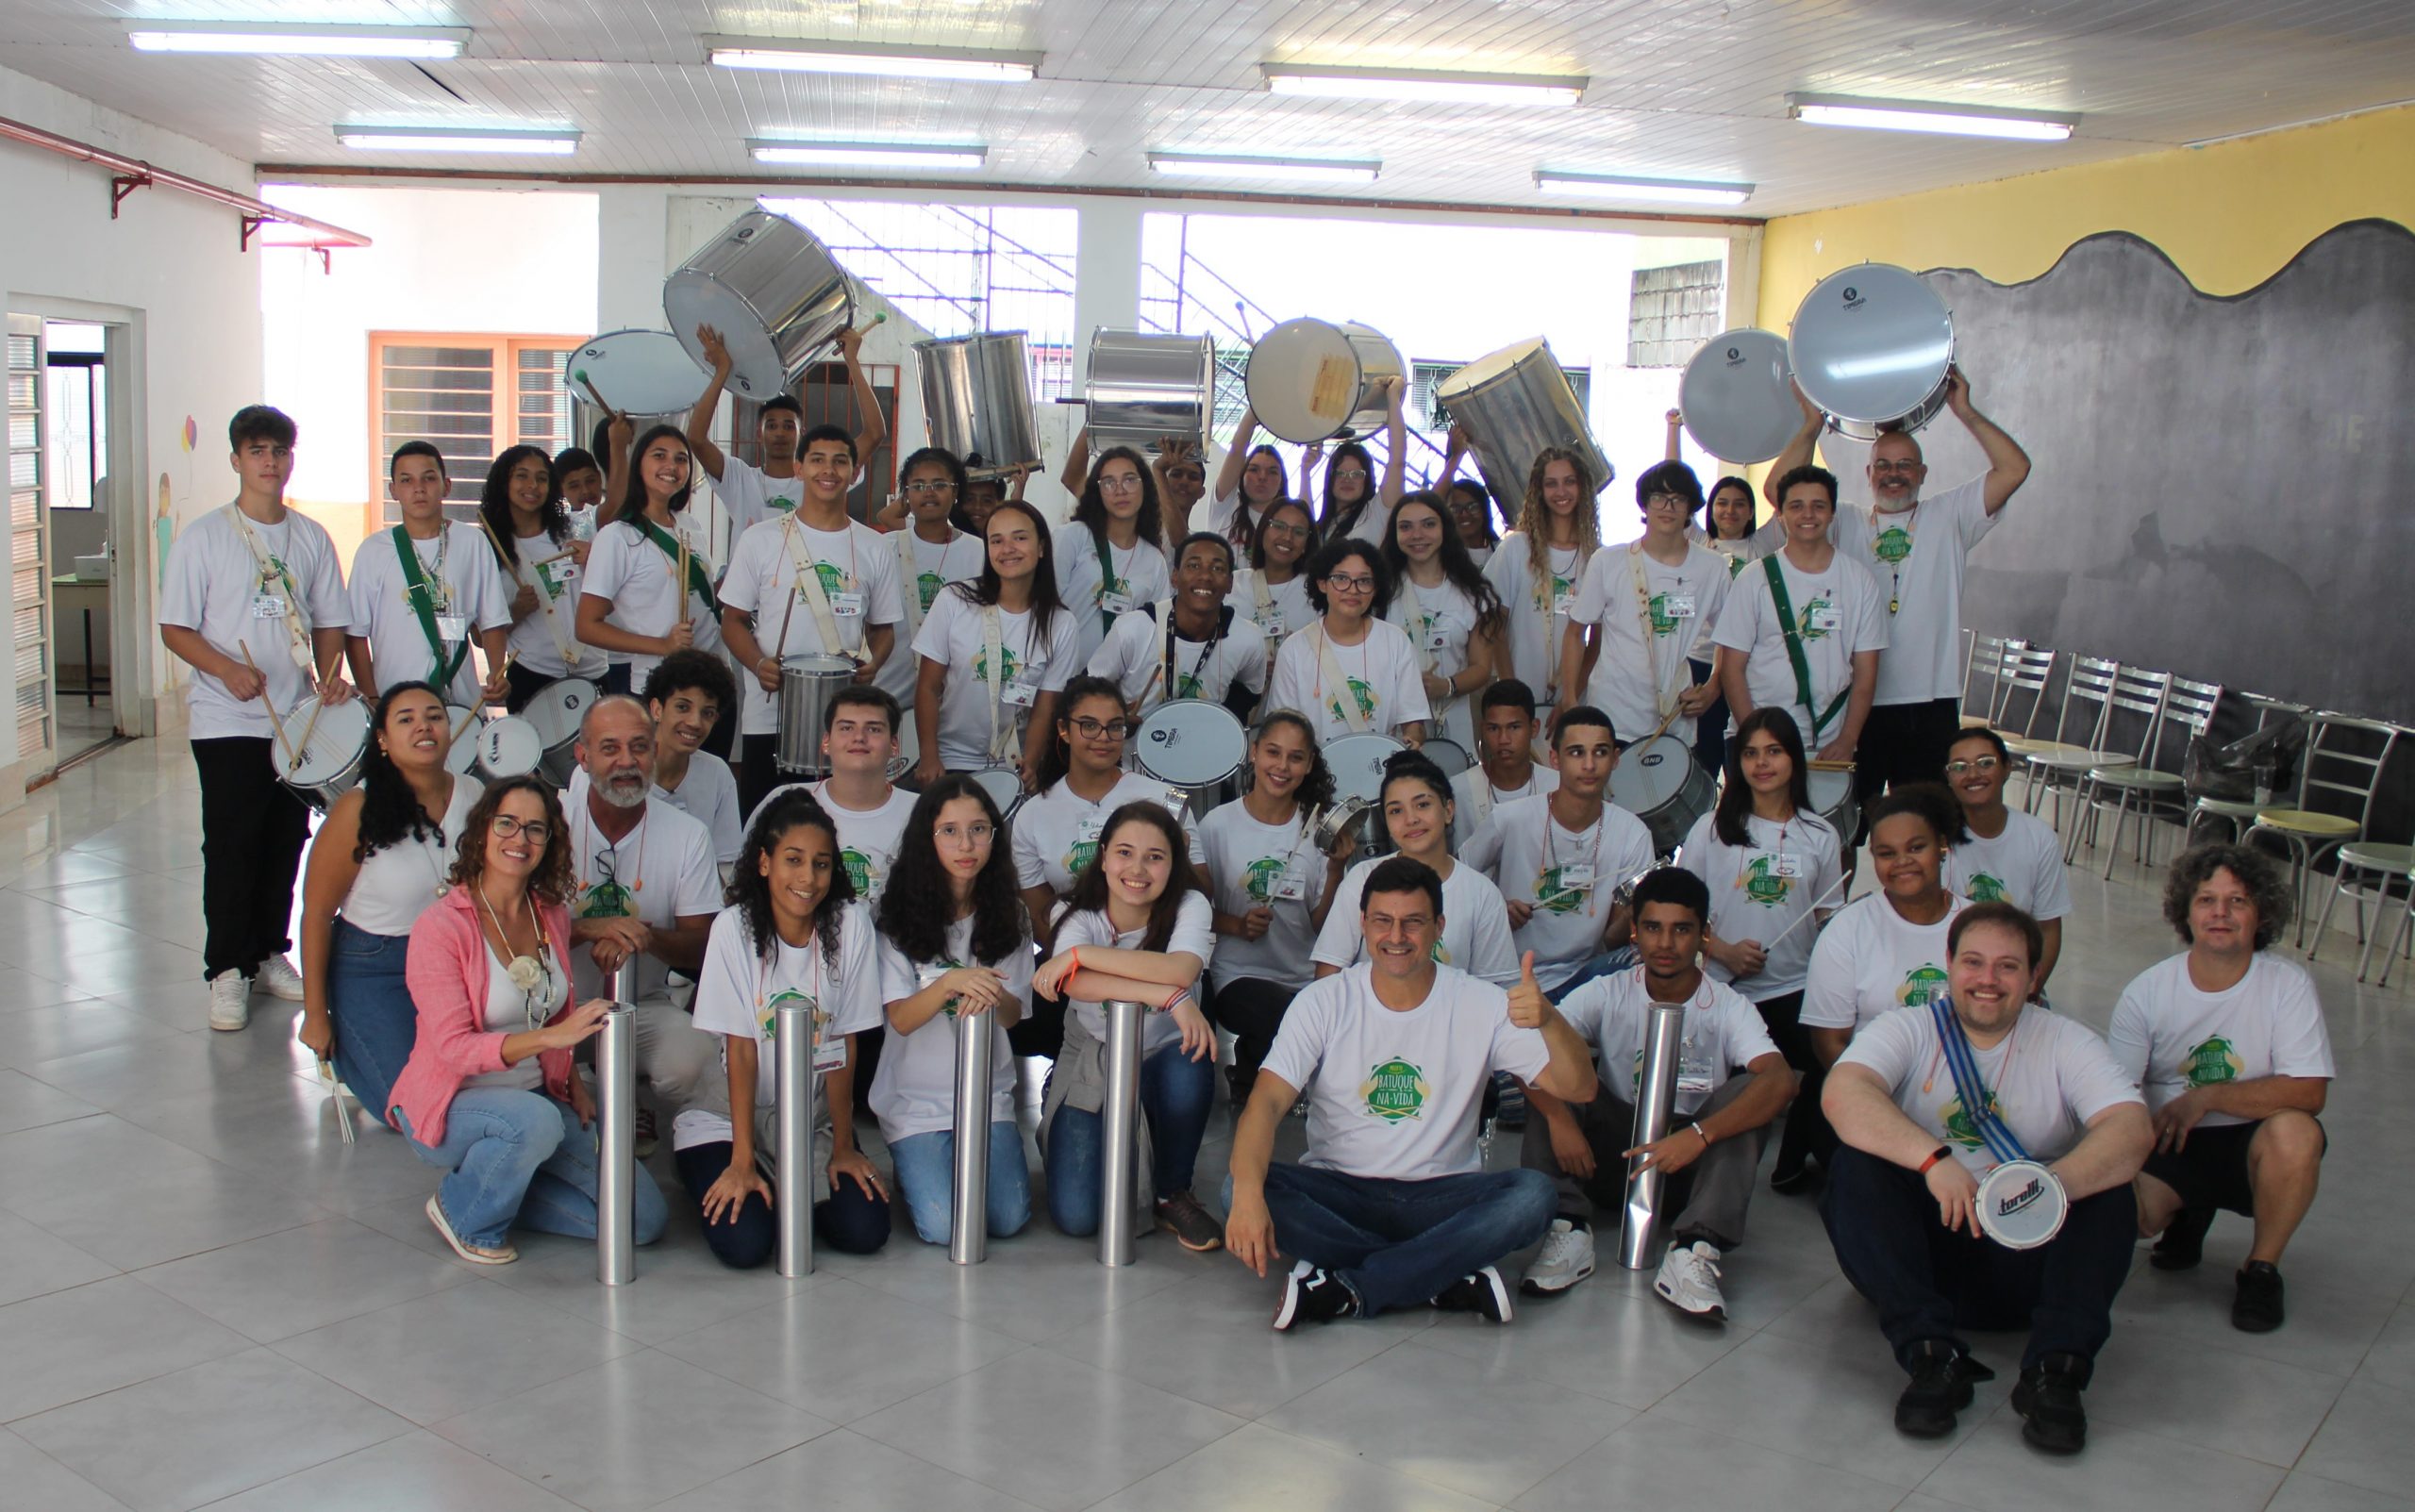 Jovens do projeto “Batuque da Vida” fazem  show de percussão no Centro de Convivência, em Campinas